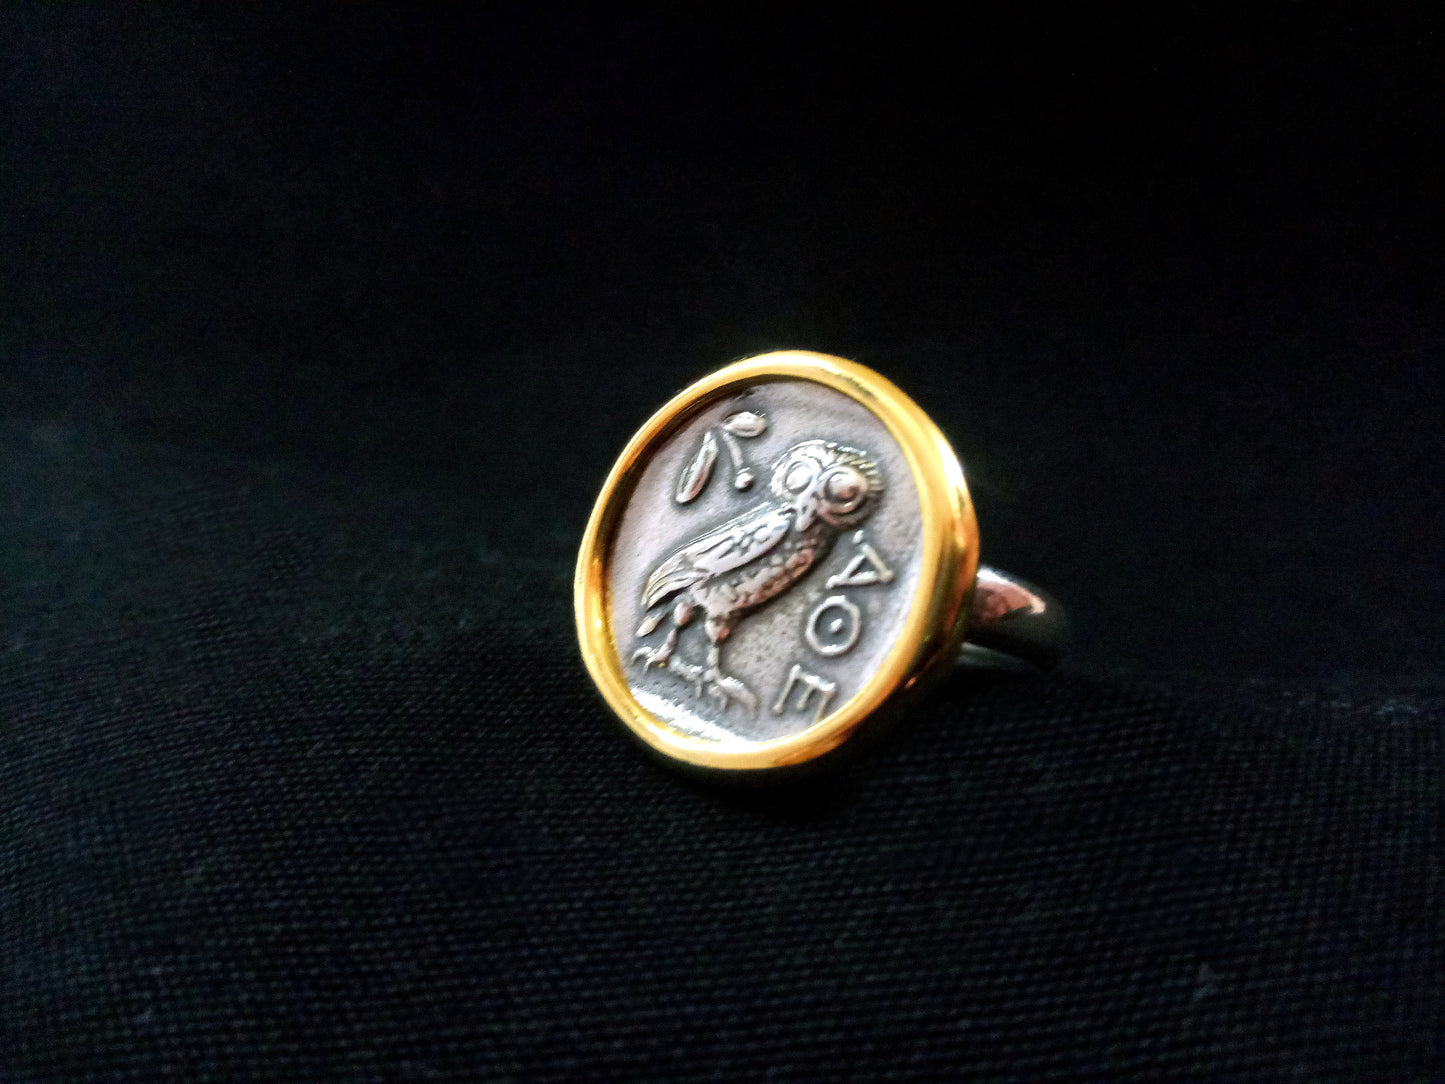 Sterling Silber 925 antike griechische Eule vergoldet Münzring 21mm, griechische Eule Silberring, griechischer Silber Goldring, Bijoux Grecque Grece